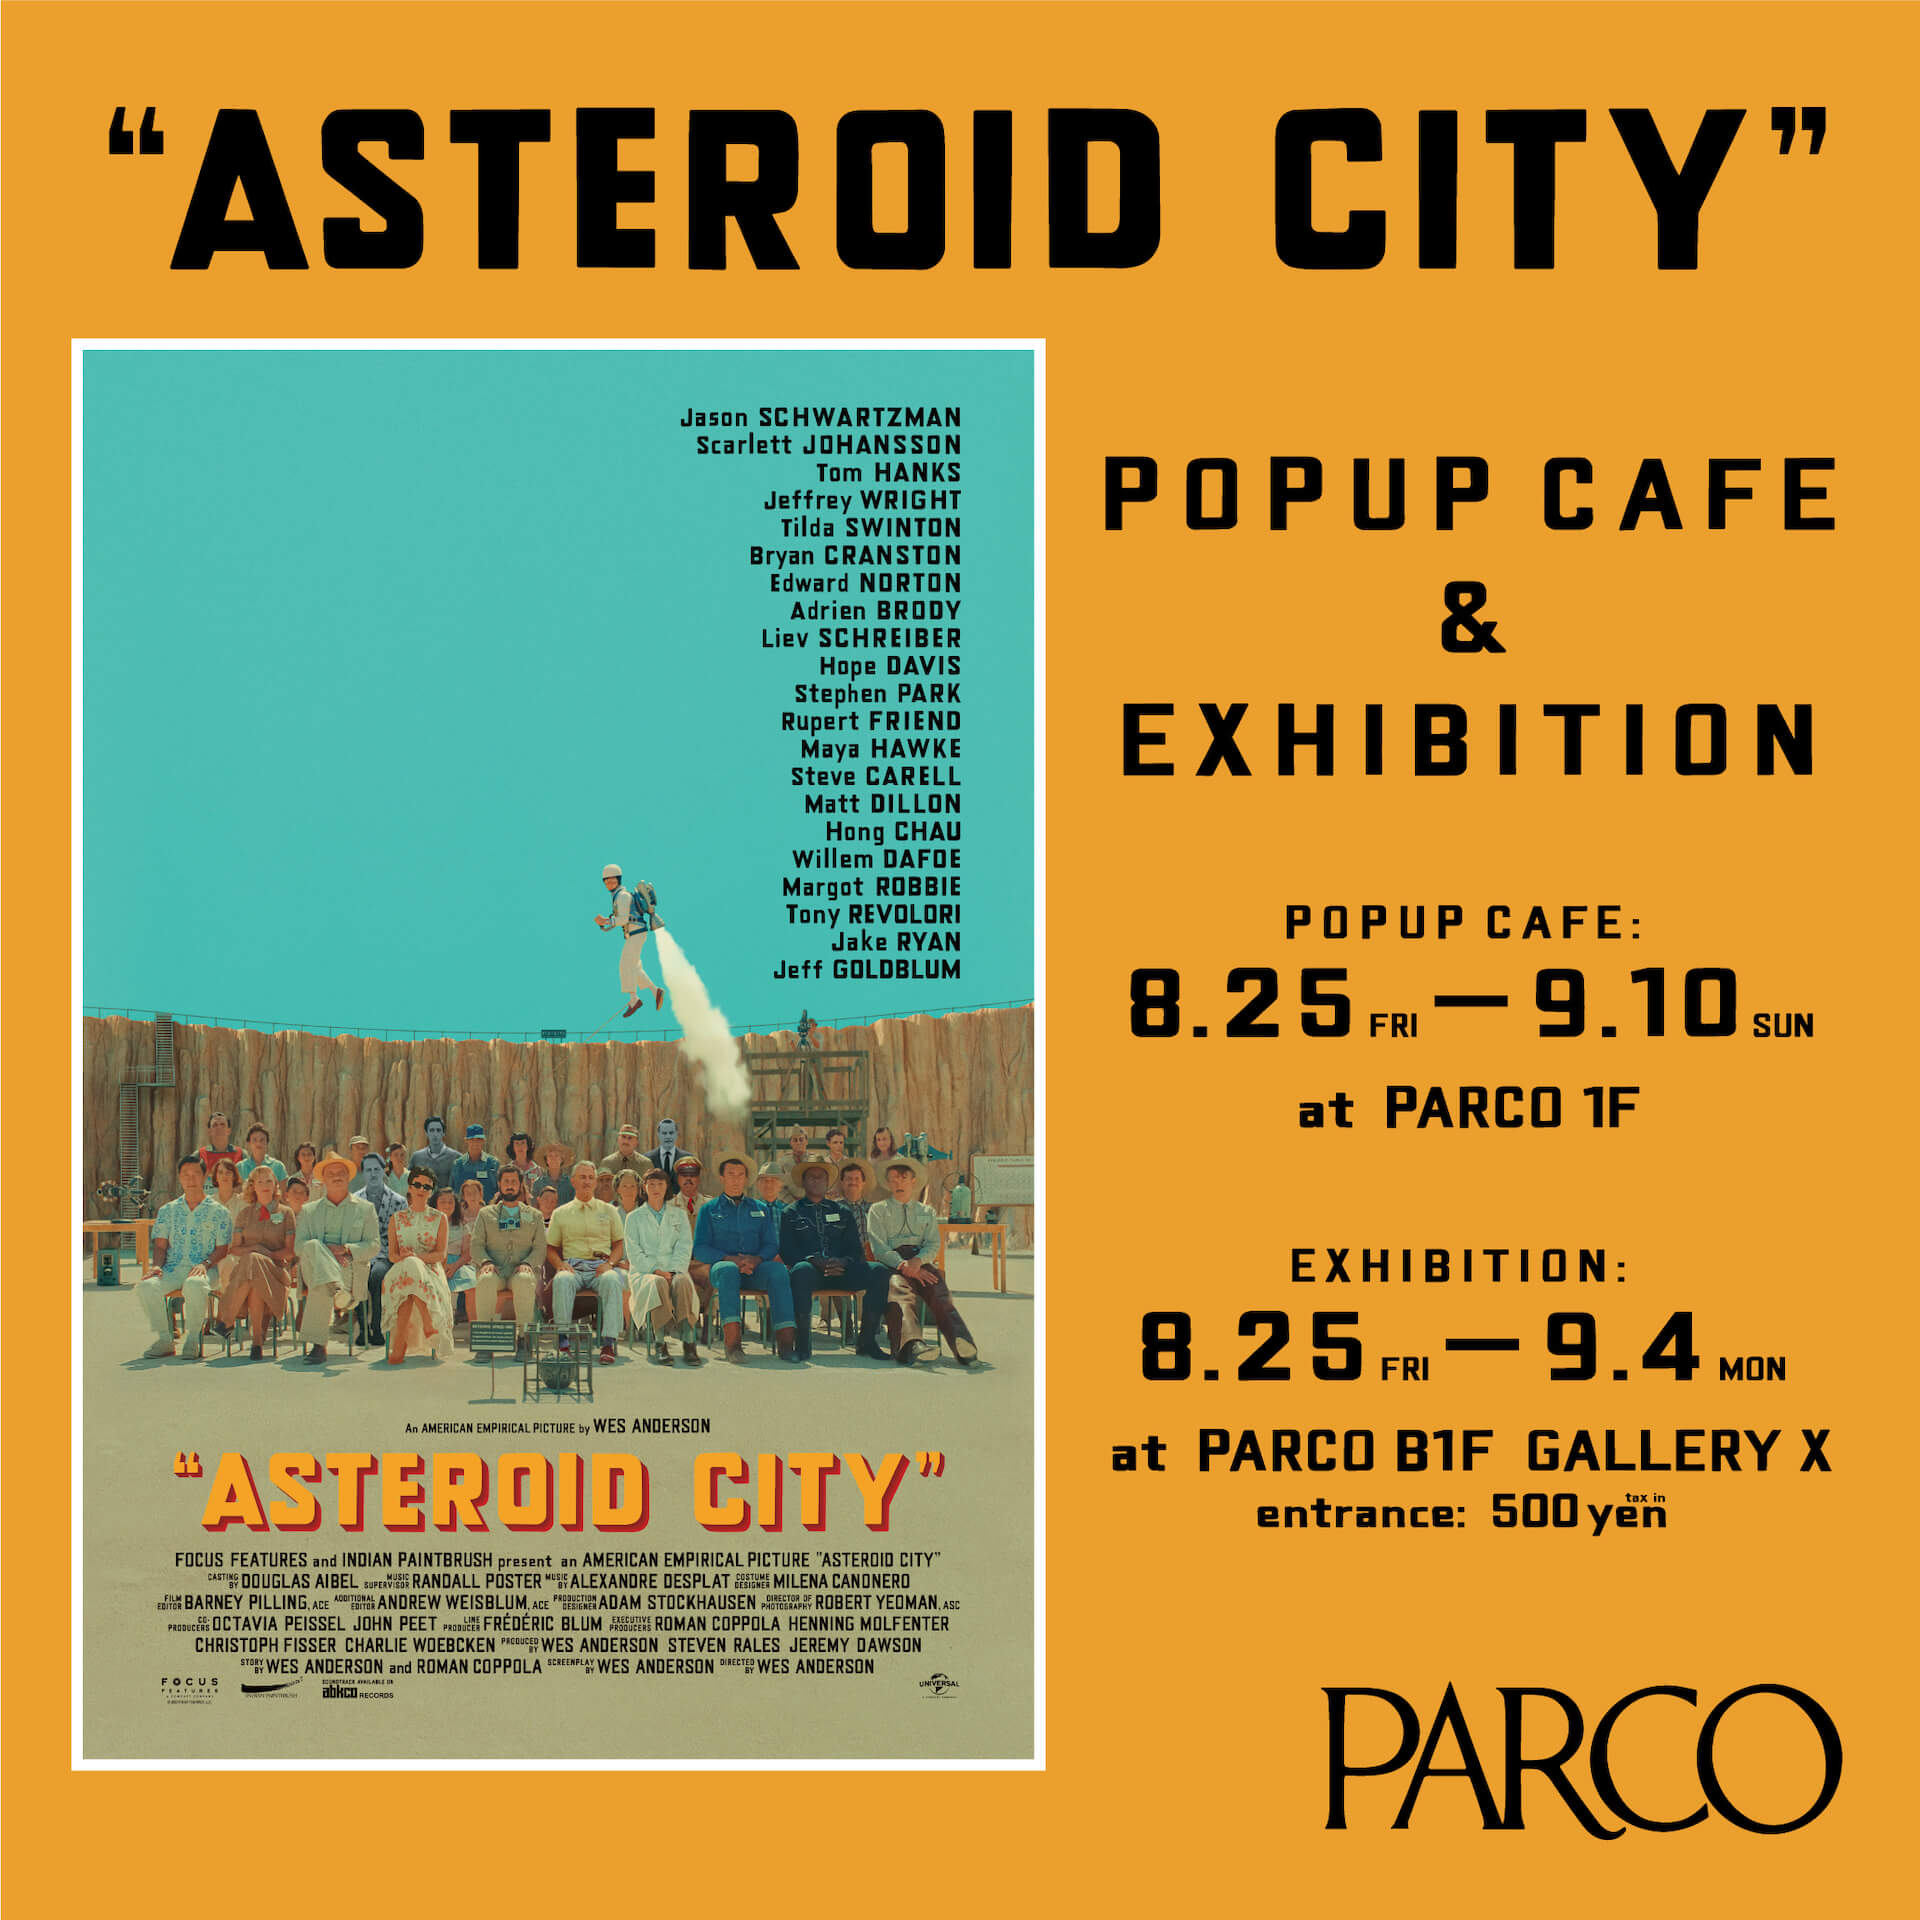 ウェス・アンダーソン監督の最新作『アステロイド・シティ』公開を記念したPOP UPカフェと展示会が渋谷PARCOで開催 artculture230822-wes-anderson-parco6